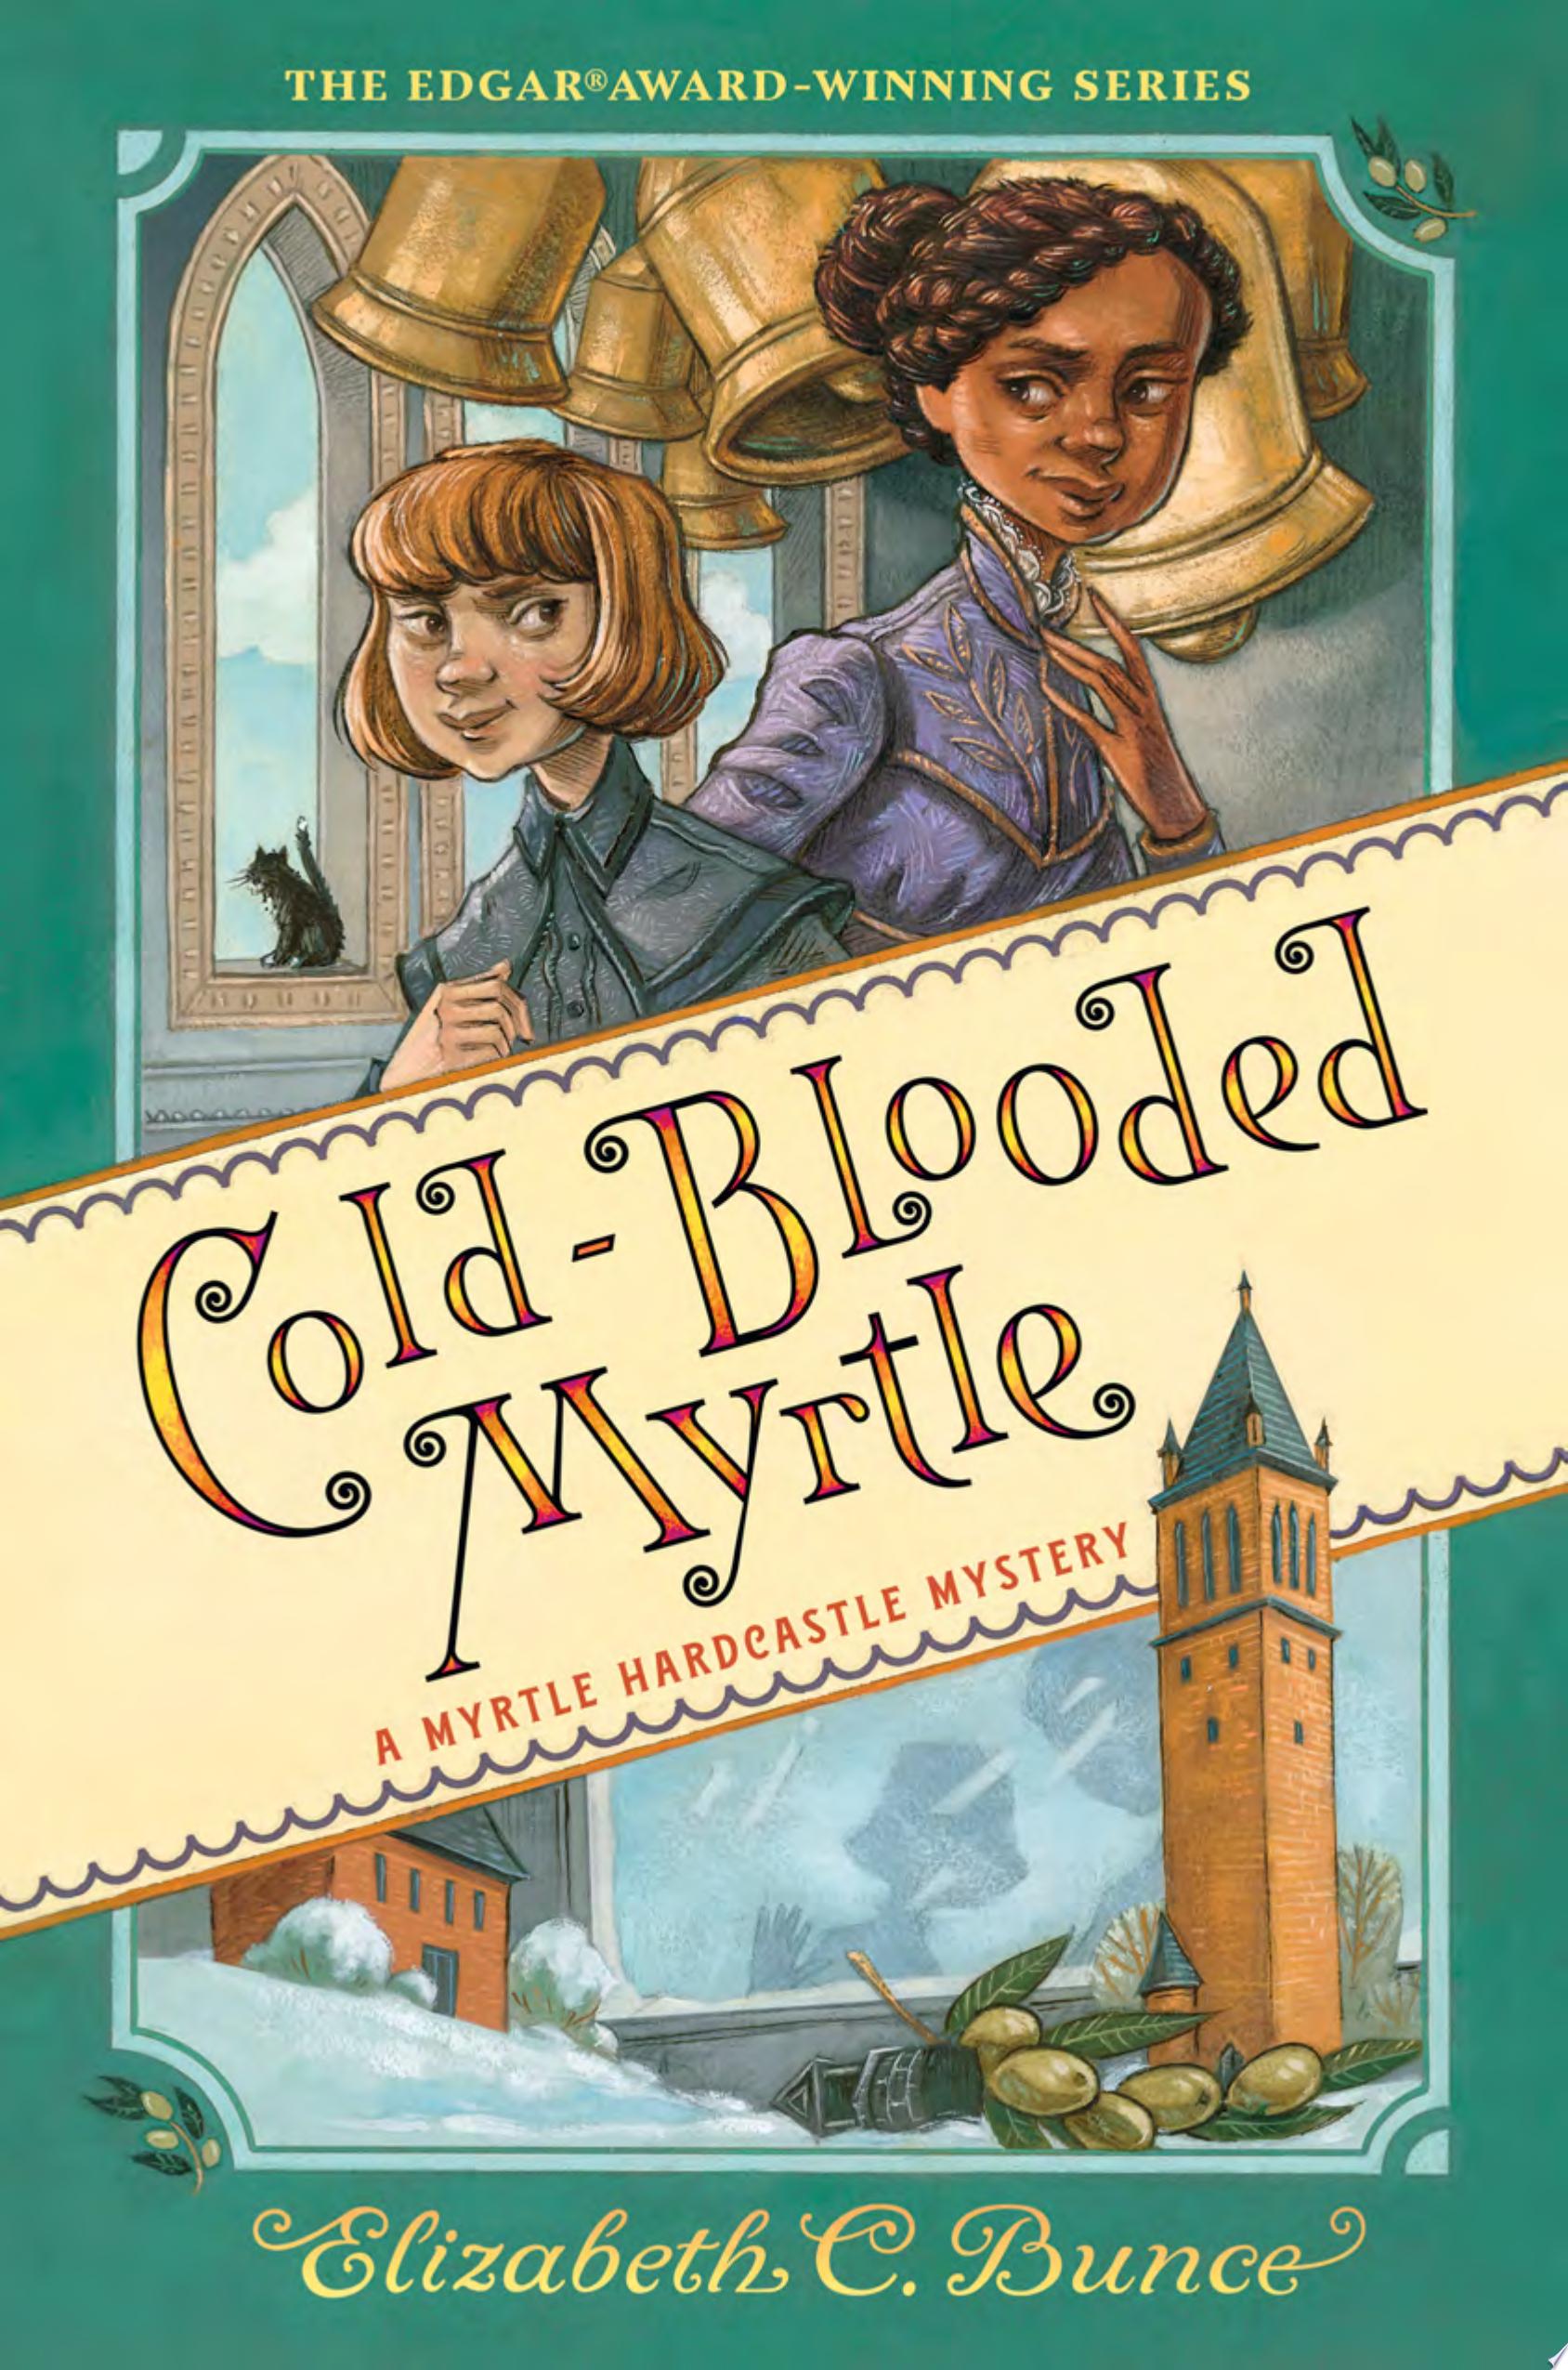 Image for "Cold-Blooded Myrtle (Myrtle Hardcastle Mystery 3)"